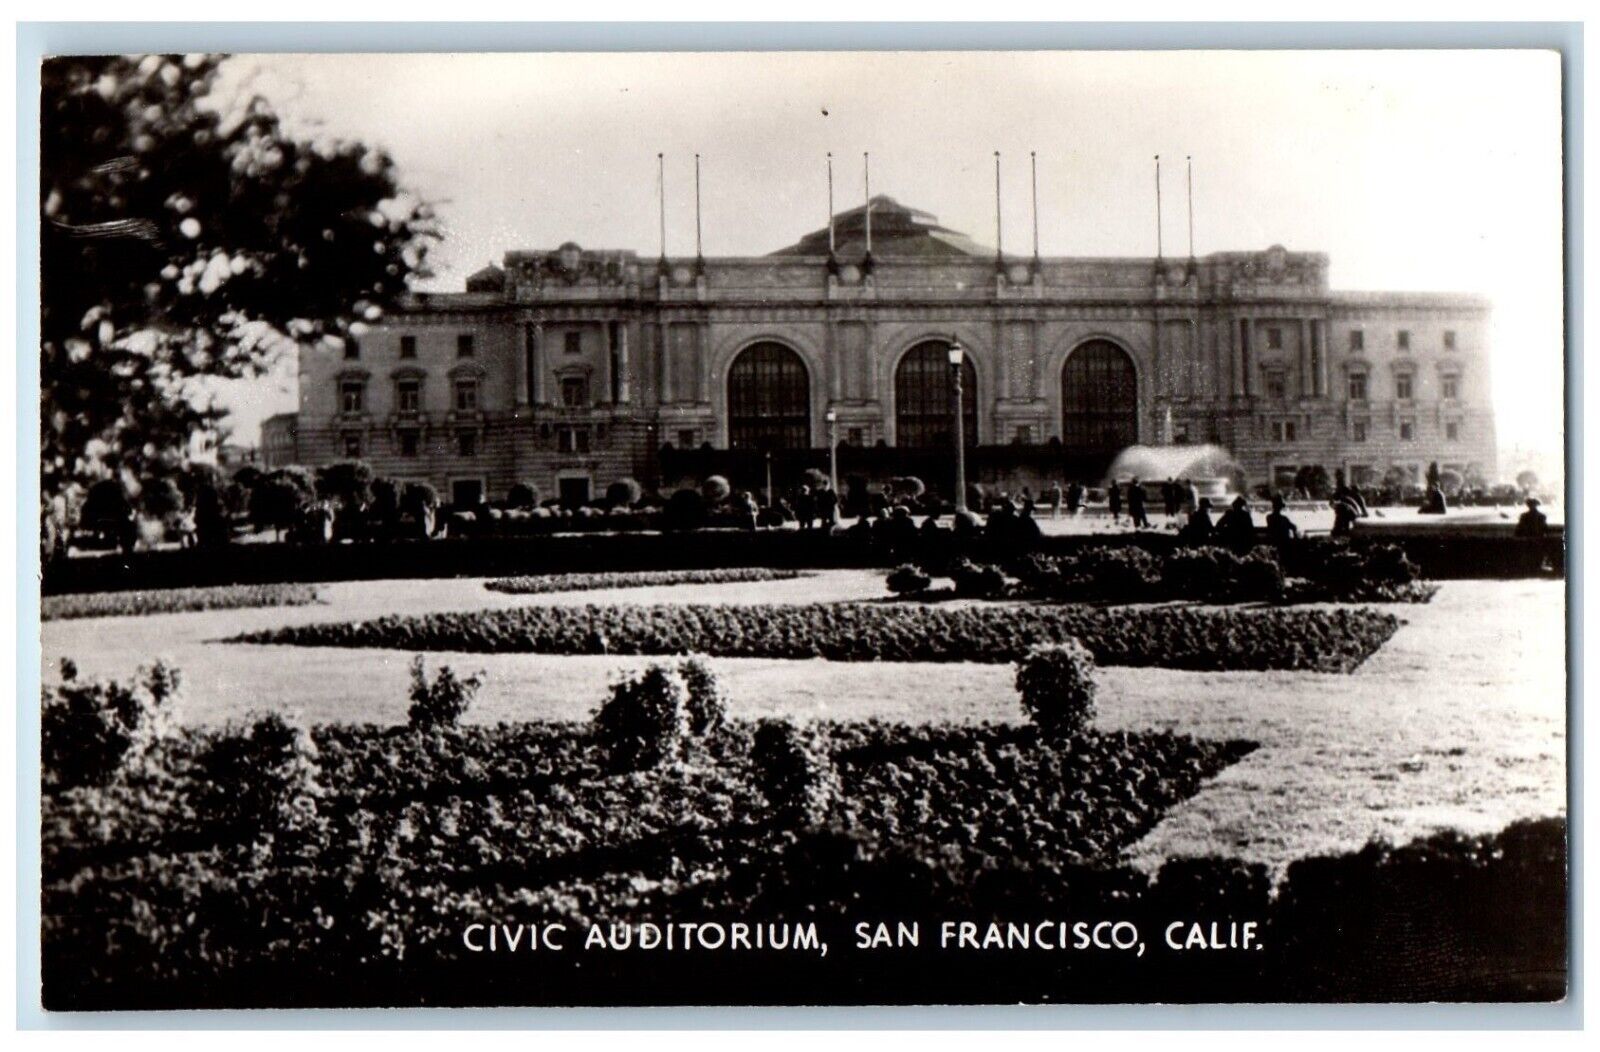 San Francisco California CA Postcard RPPC Photo Civic Auditorium Building c1930s